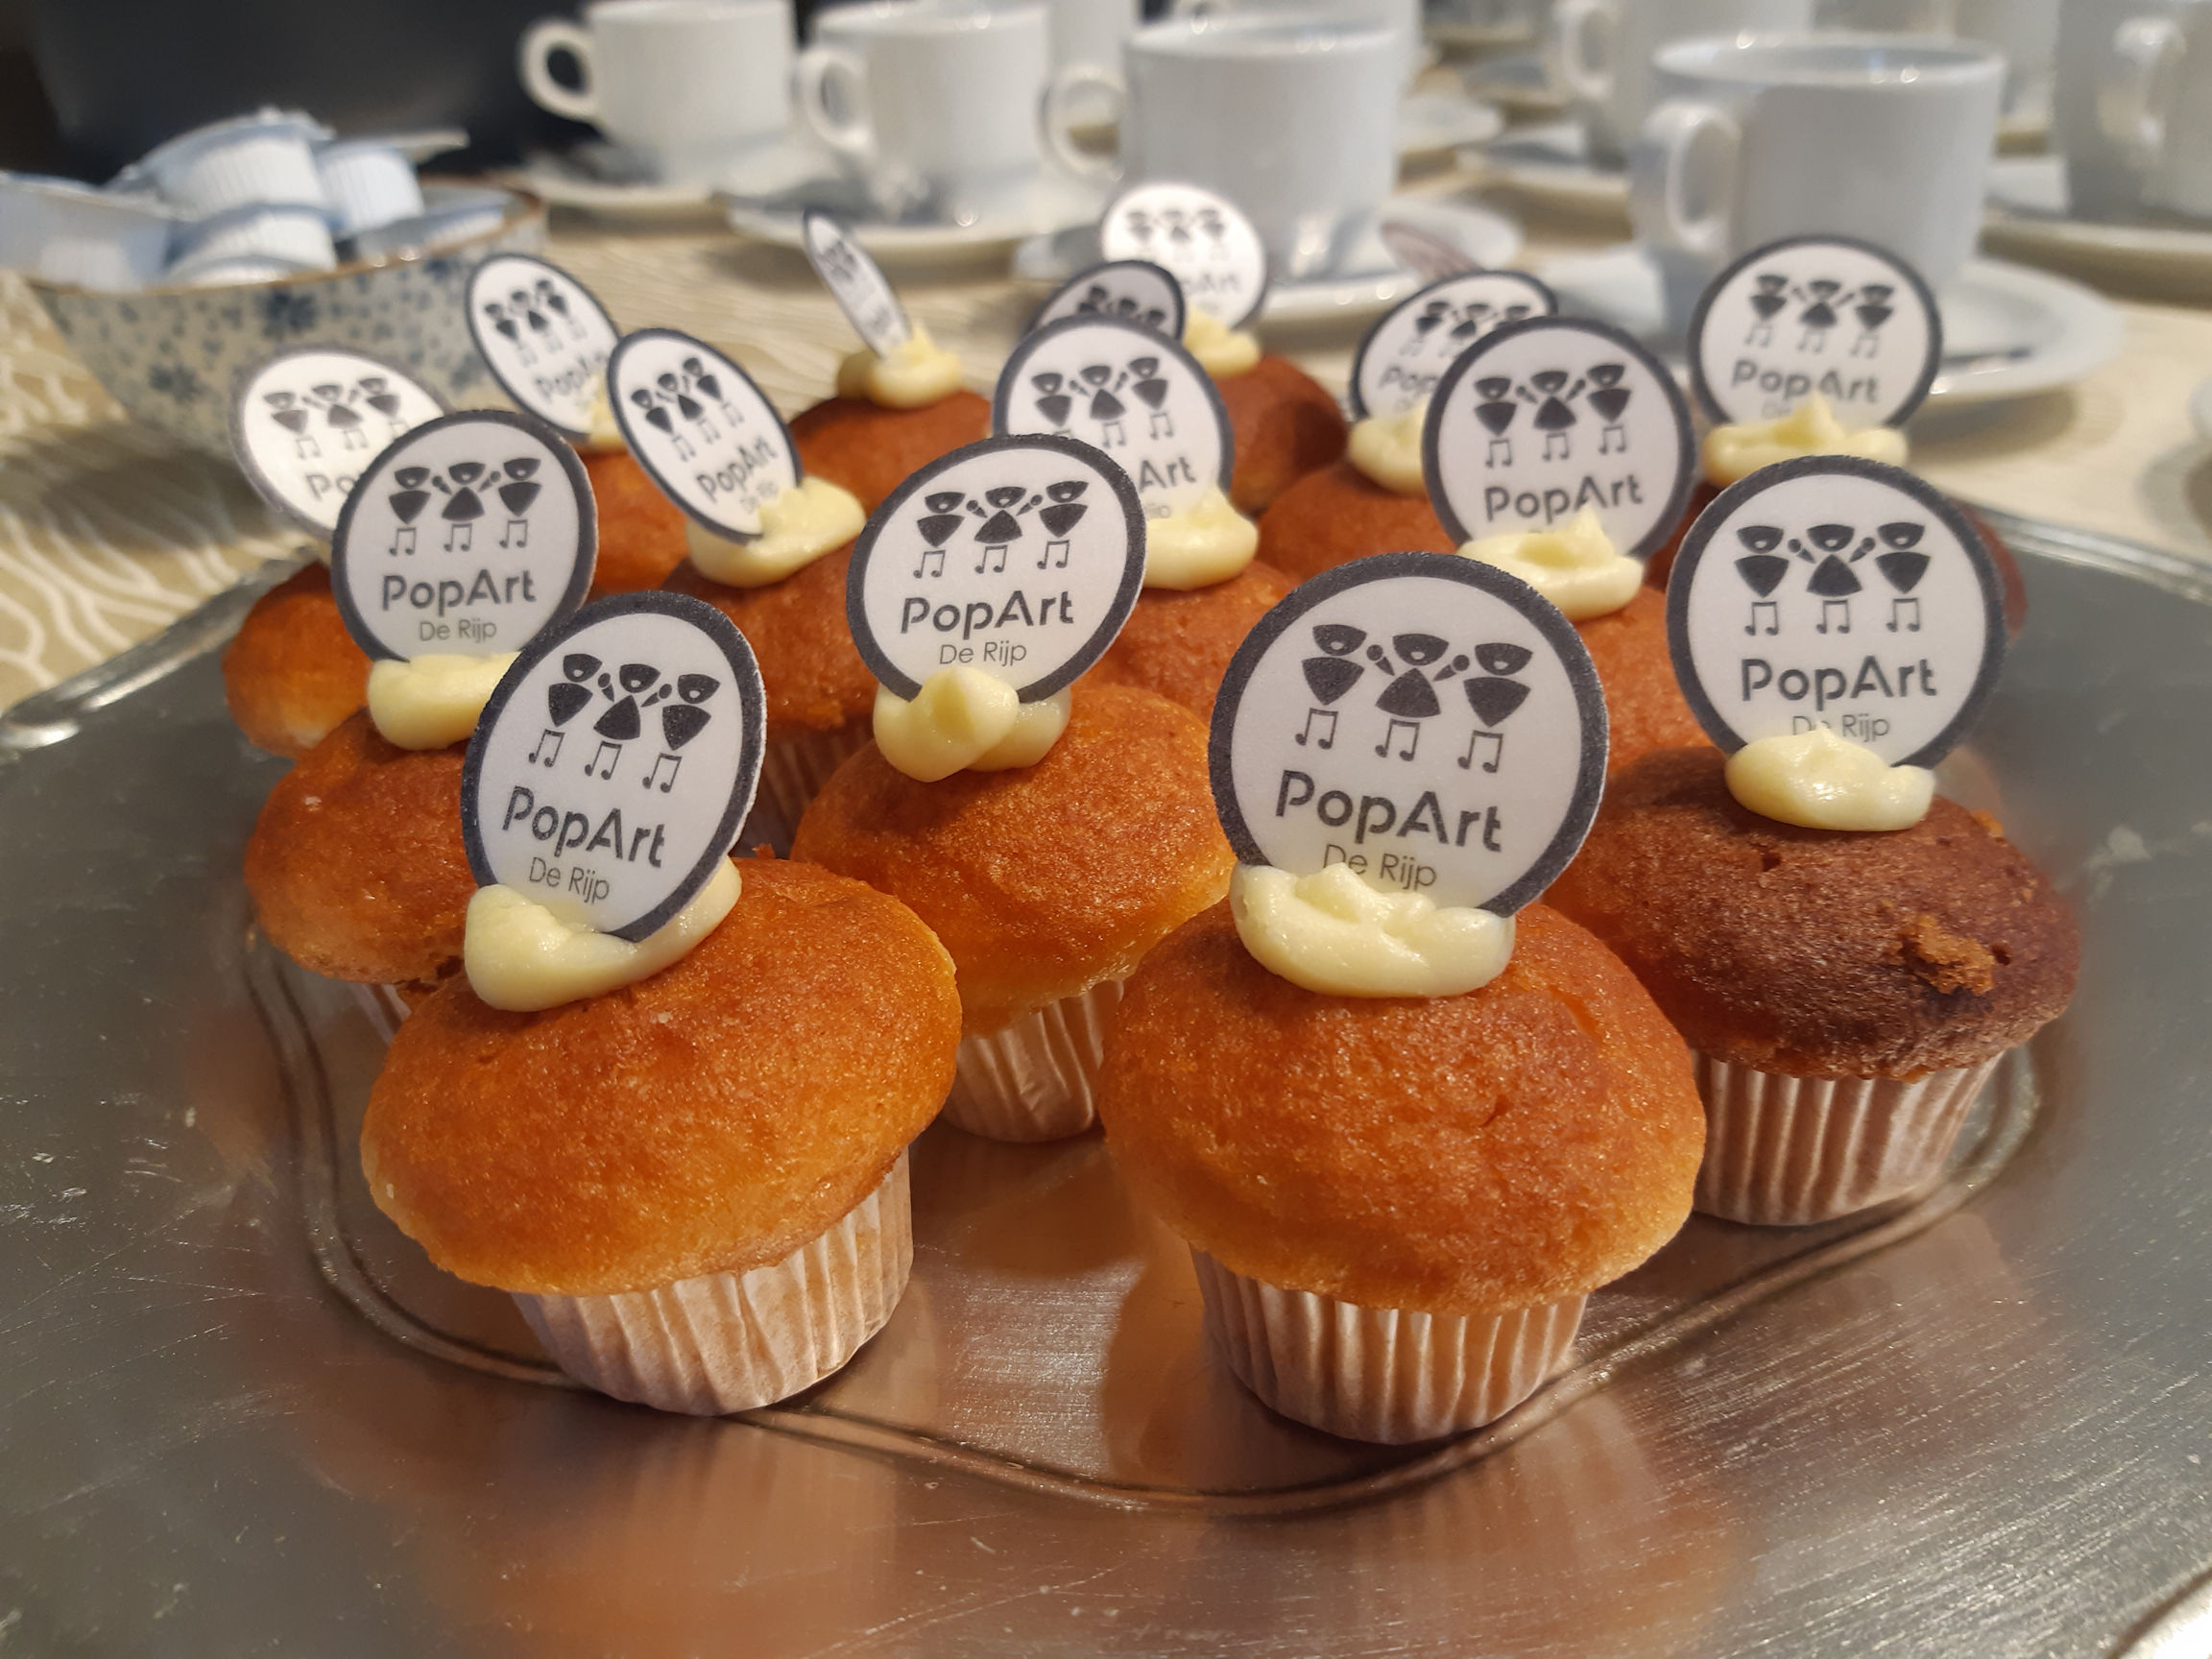 Goudbruine muffins met een beetje witte botercreme erop met daarin heen rondje gestoken waar het nieuwe PopArt logo op staat. 